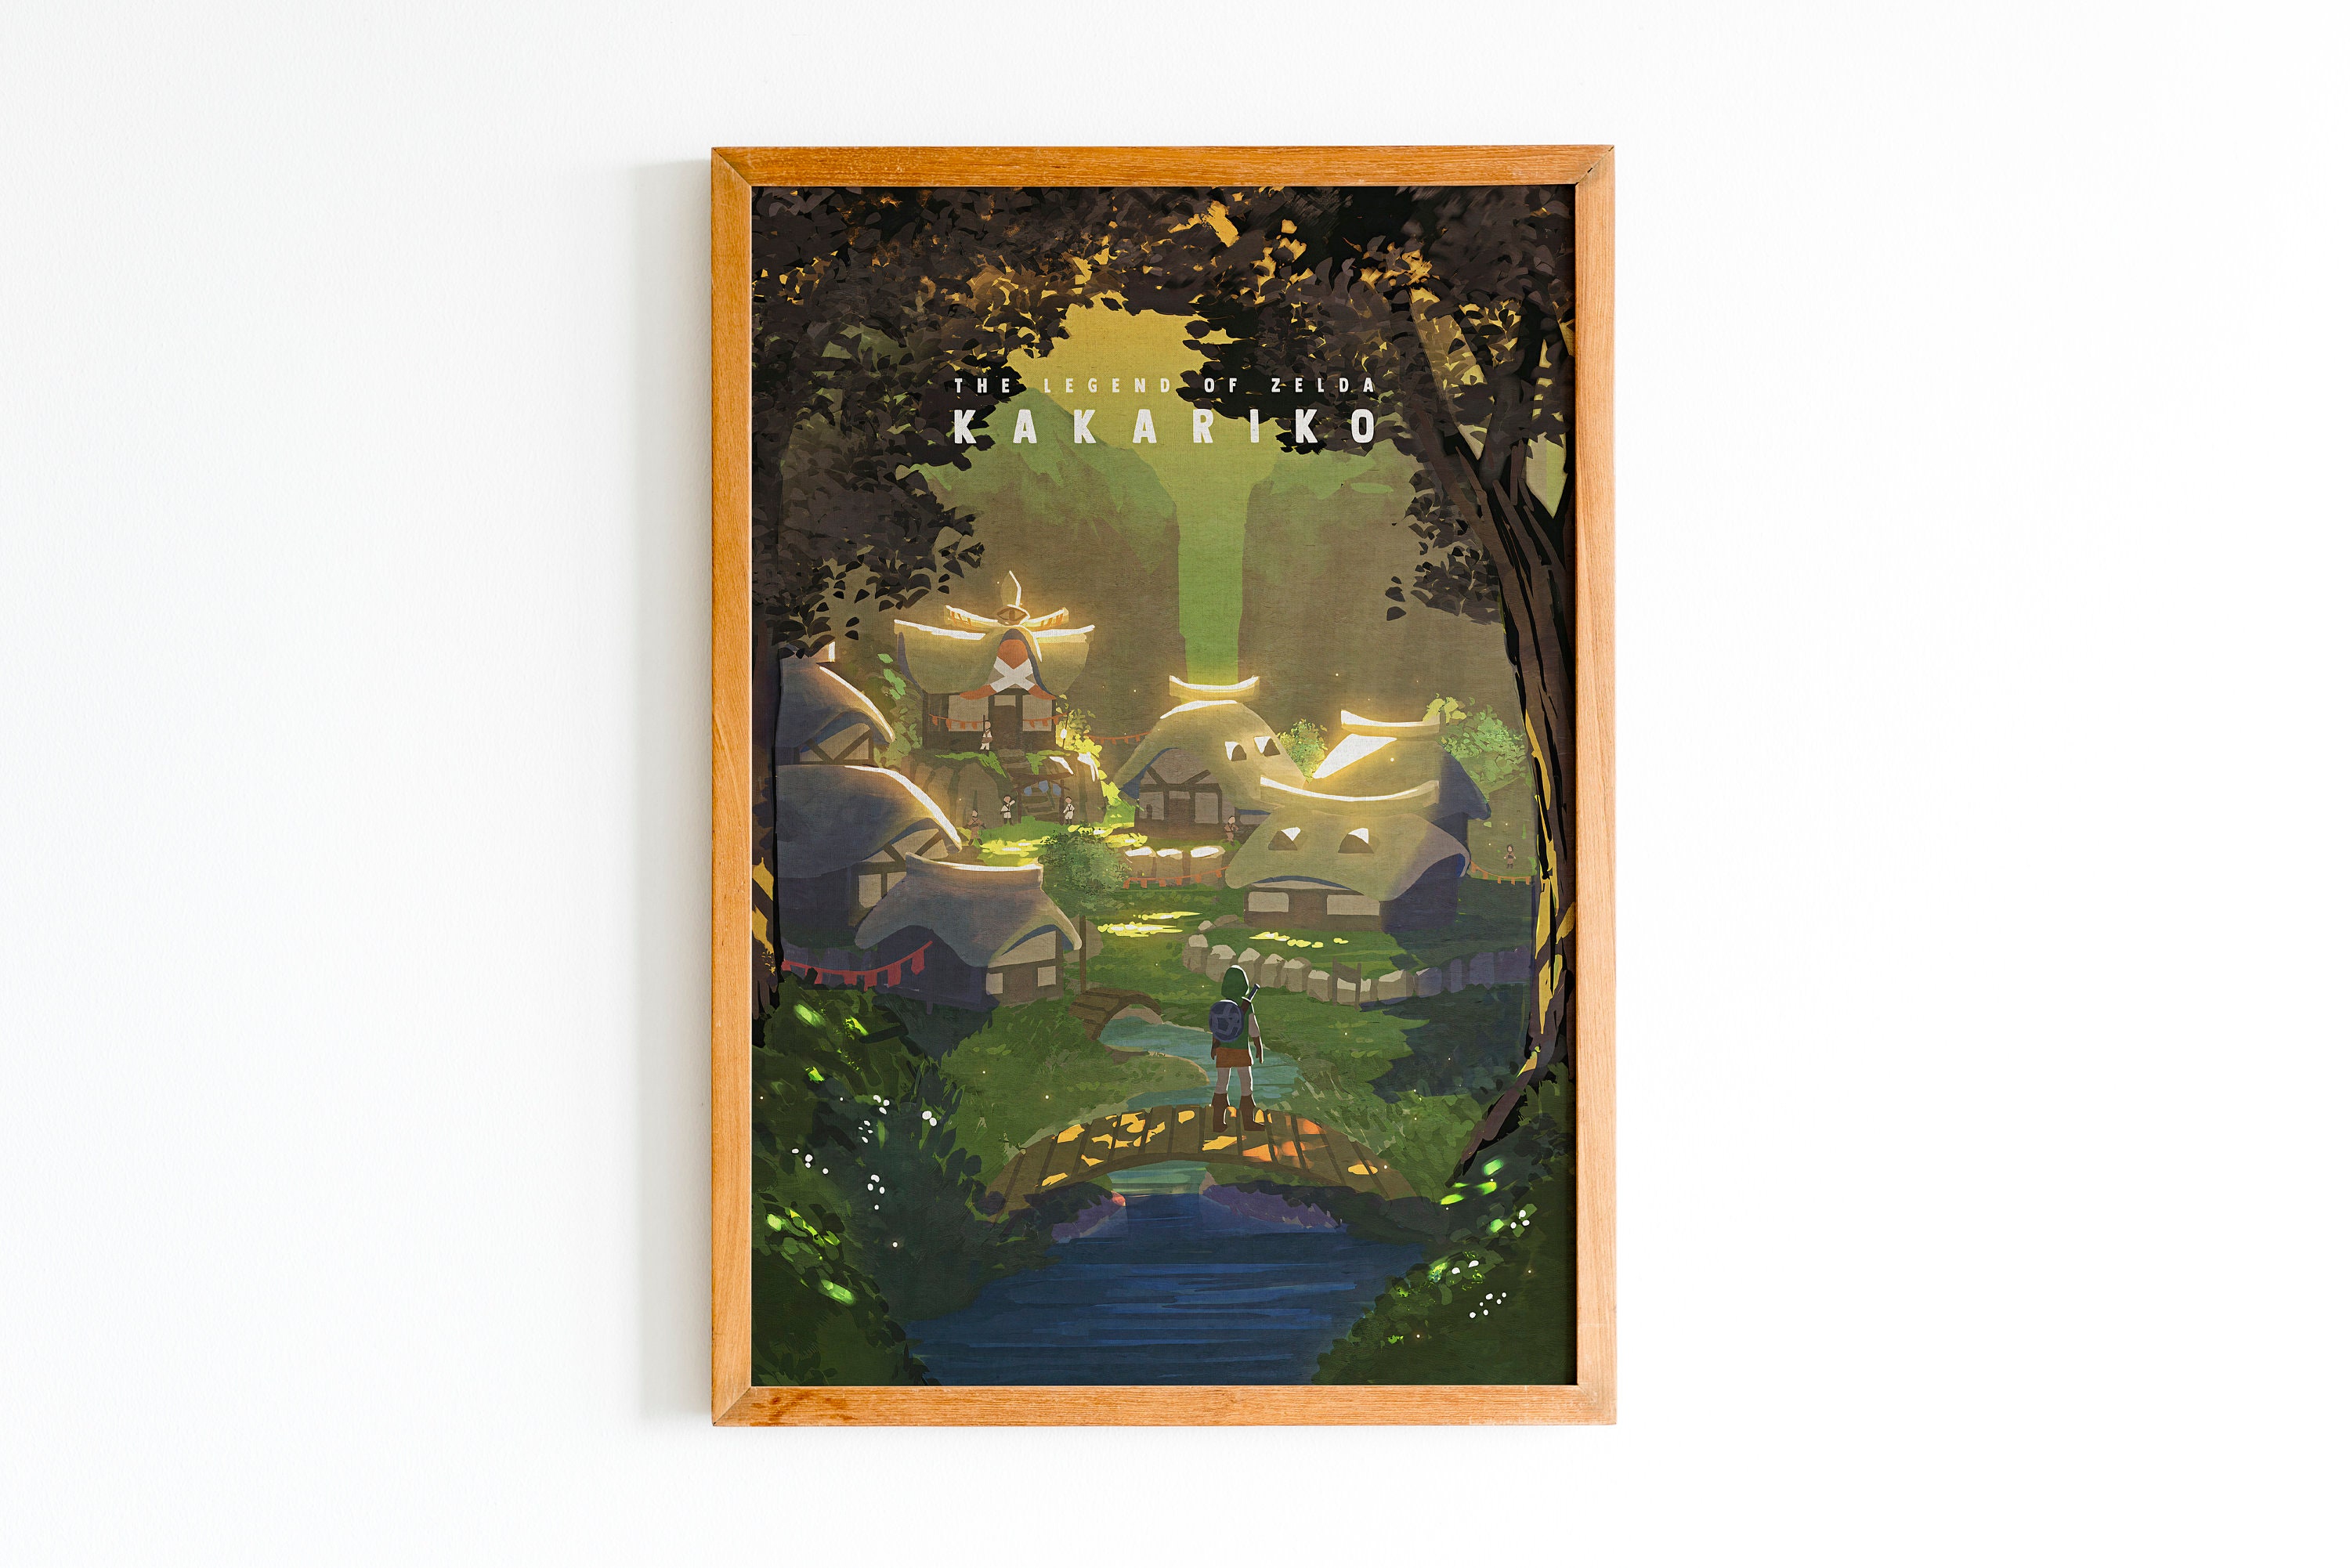 Discover The Legend Of Zelda Kakariko Travel Poster